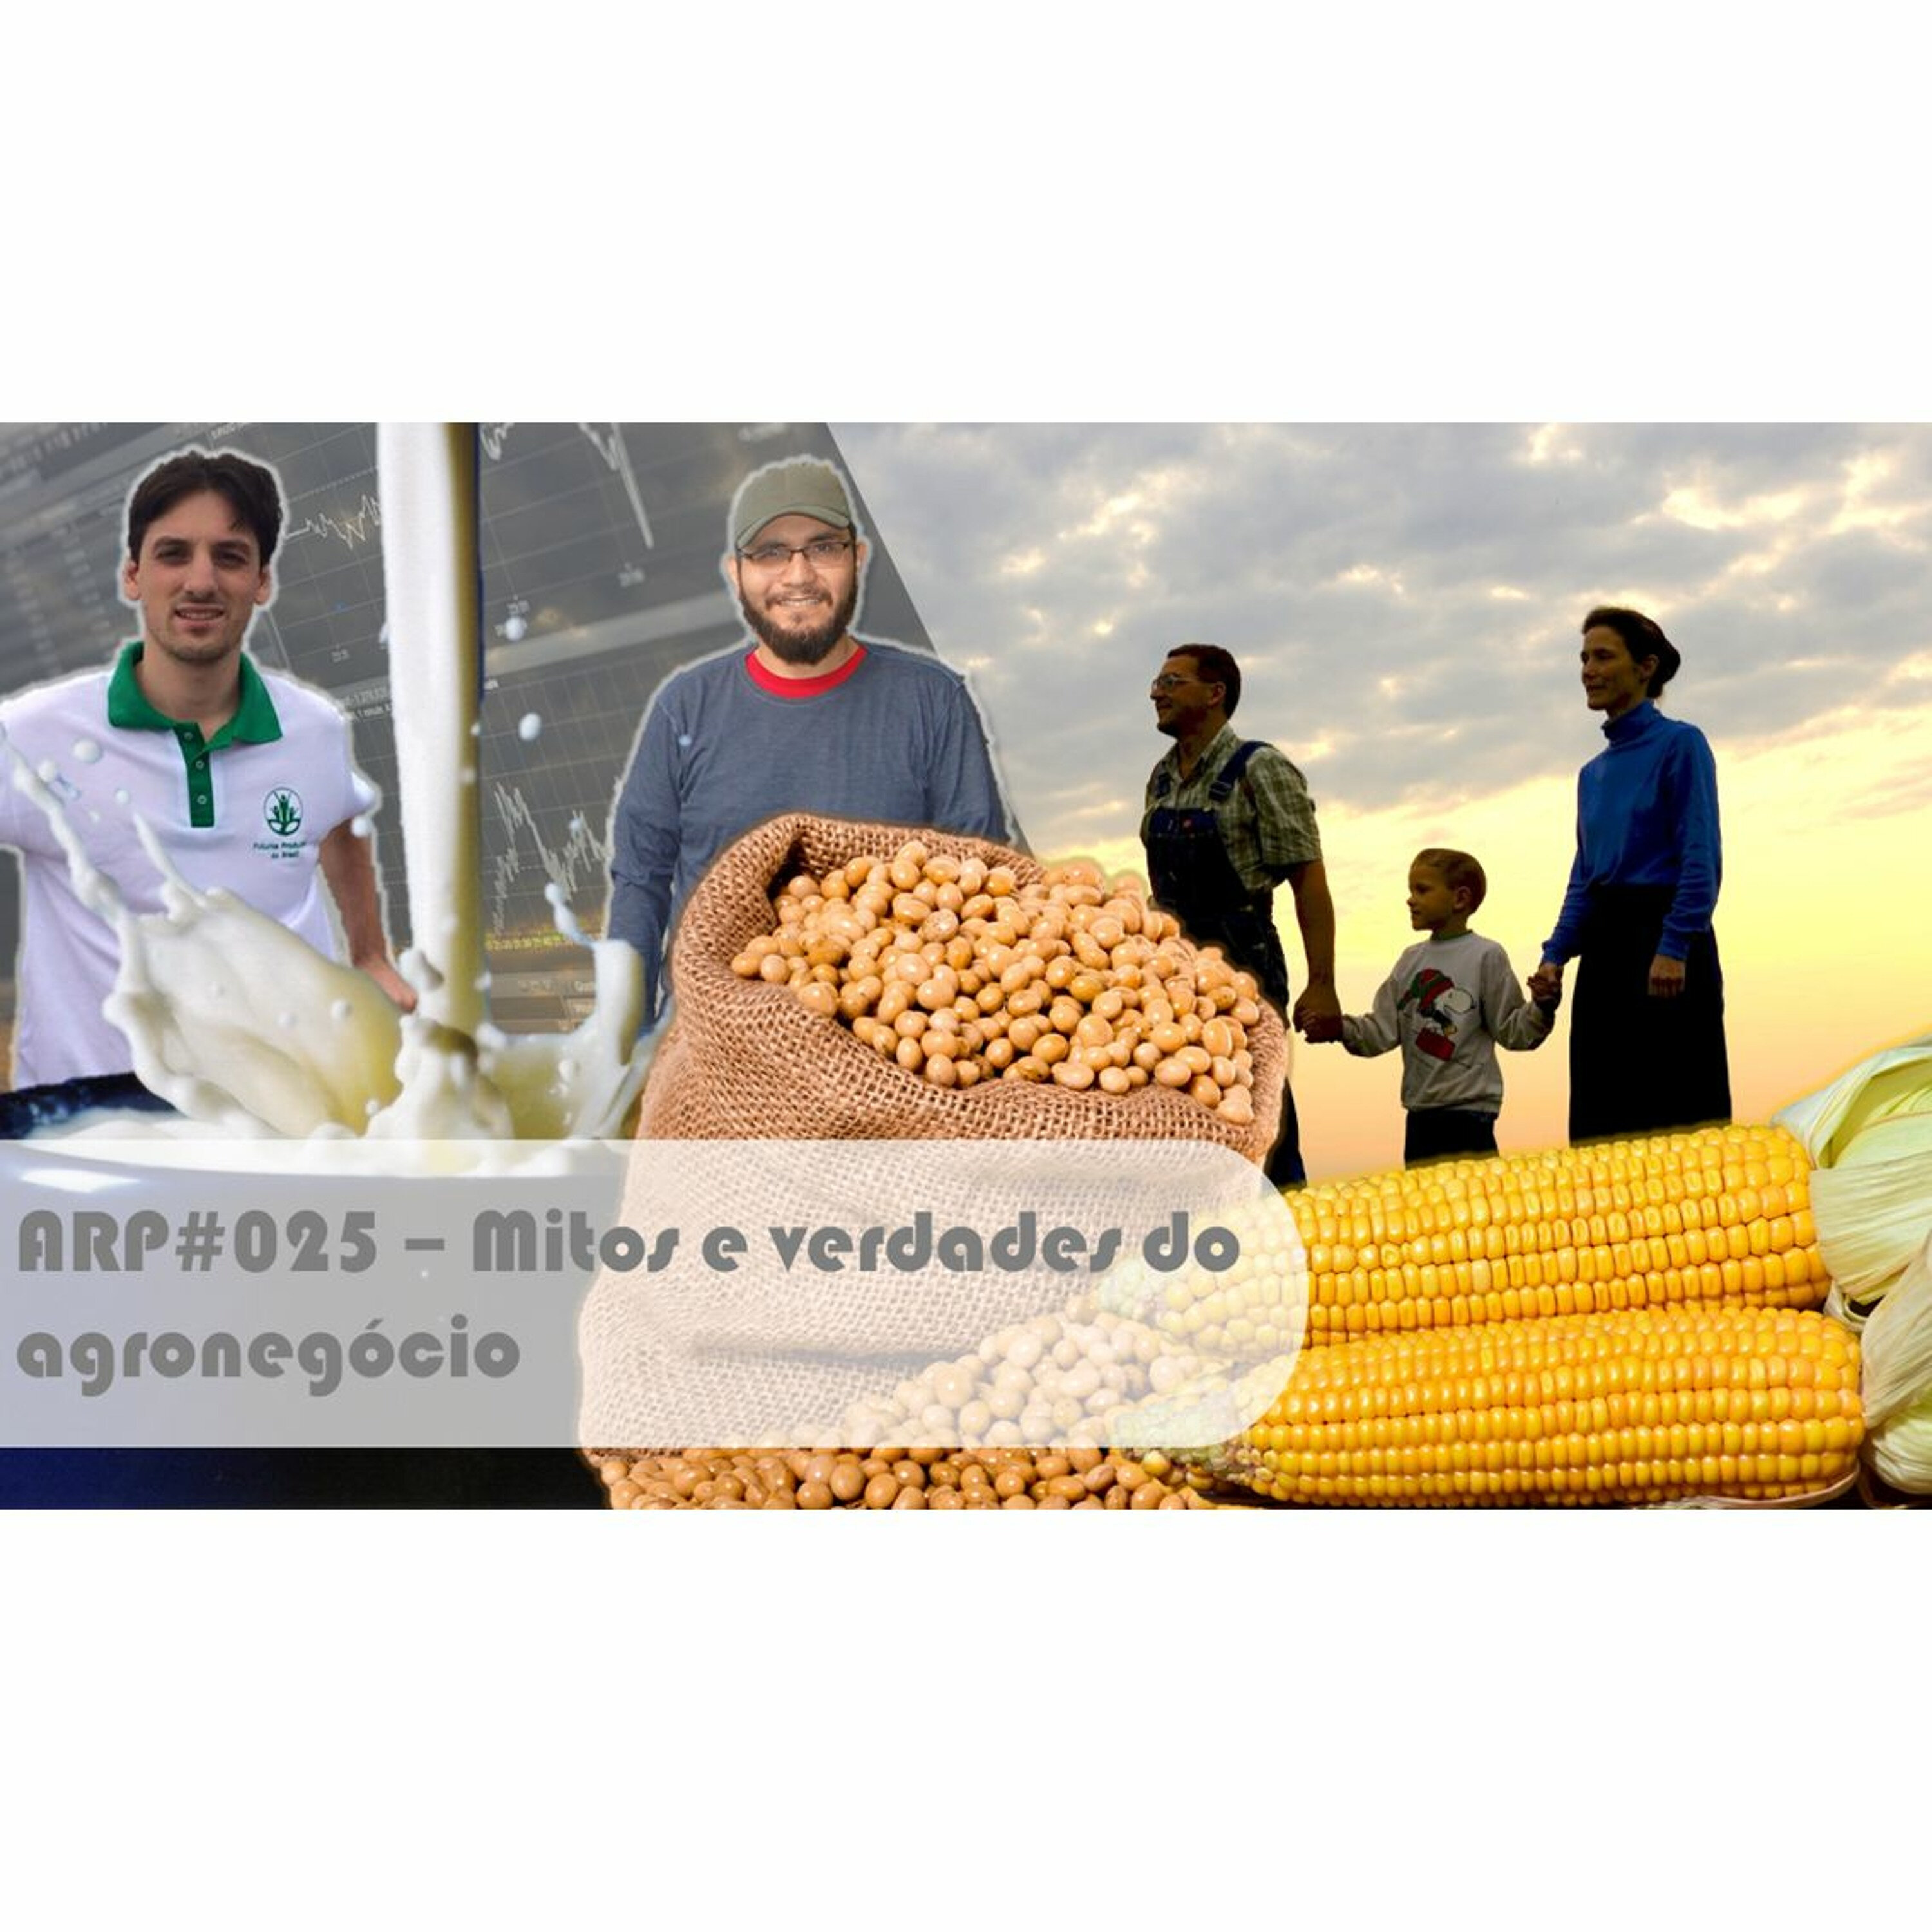 ARP#025 - Mitos e verdades do agronegócio